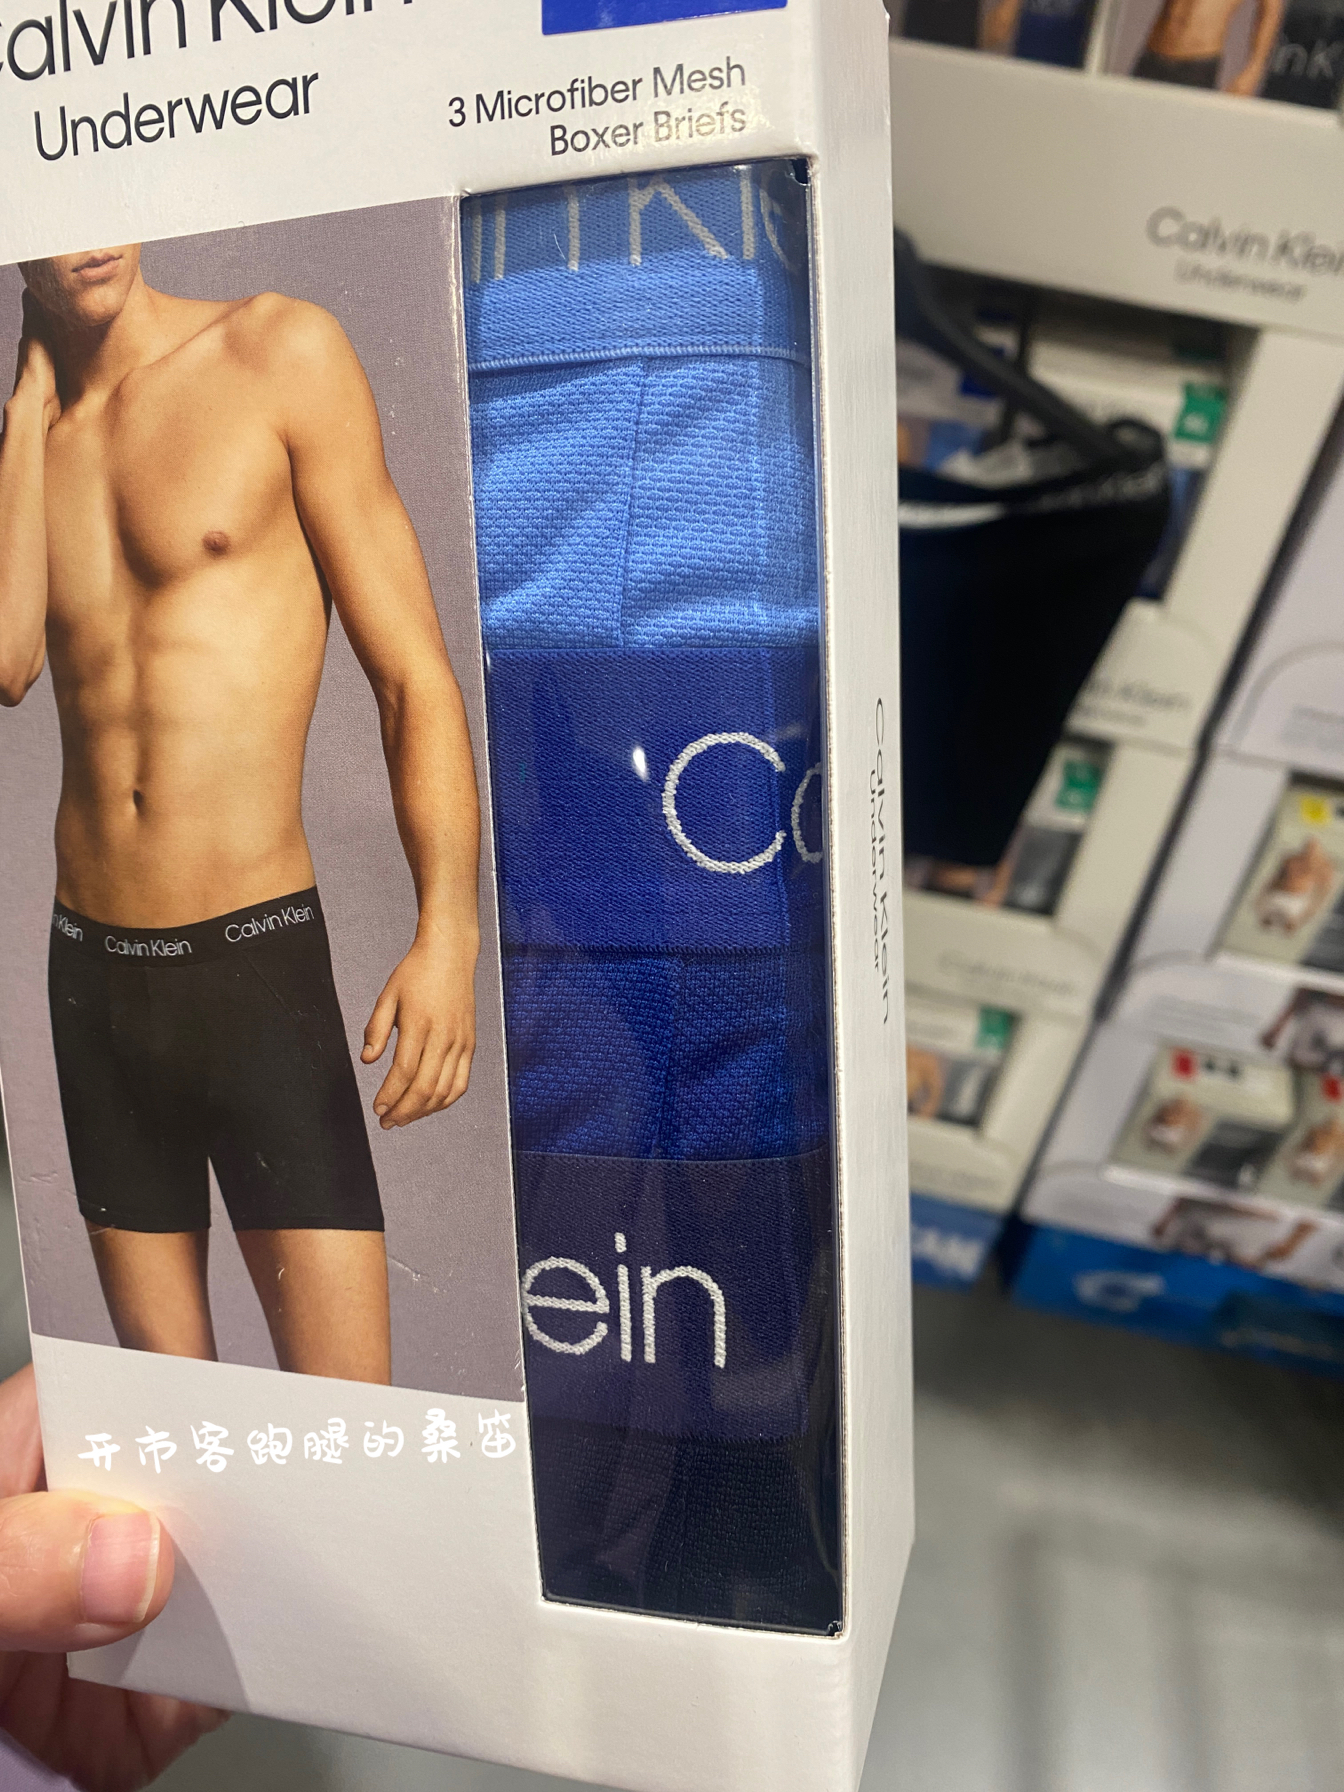 CK新款男士平角舒适内裤 开市了国内代购 一组3条 有2个颜色组合